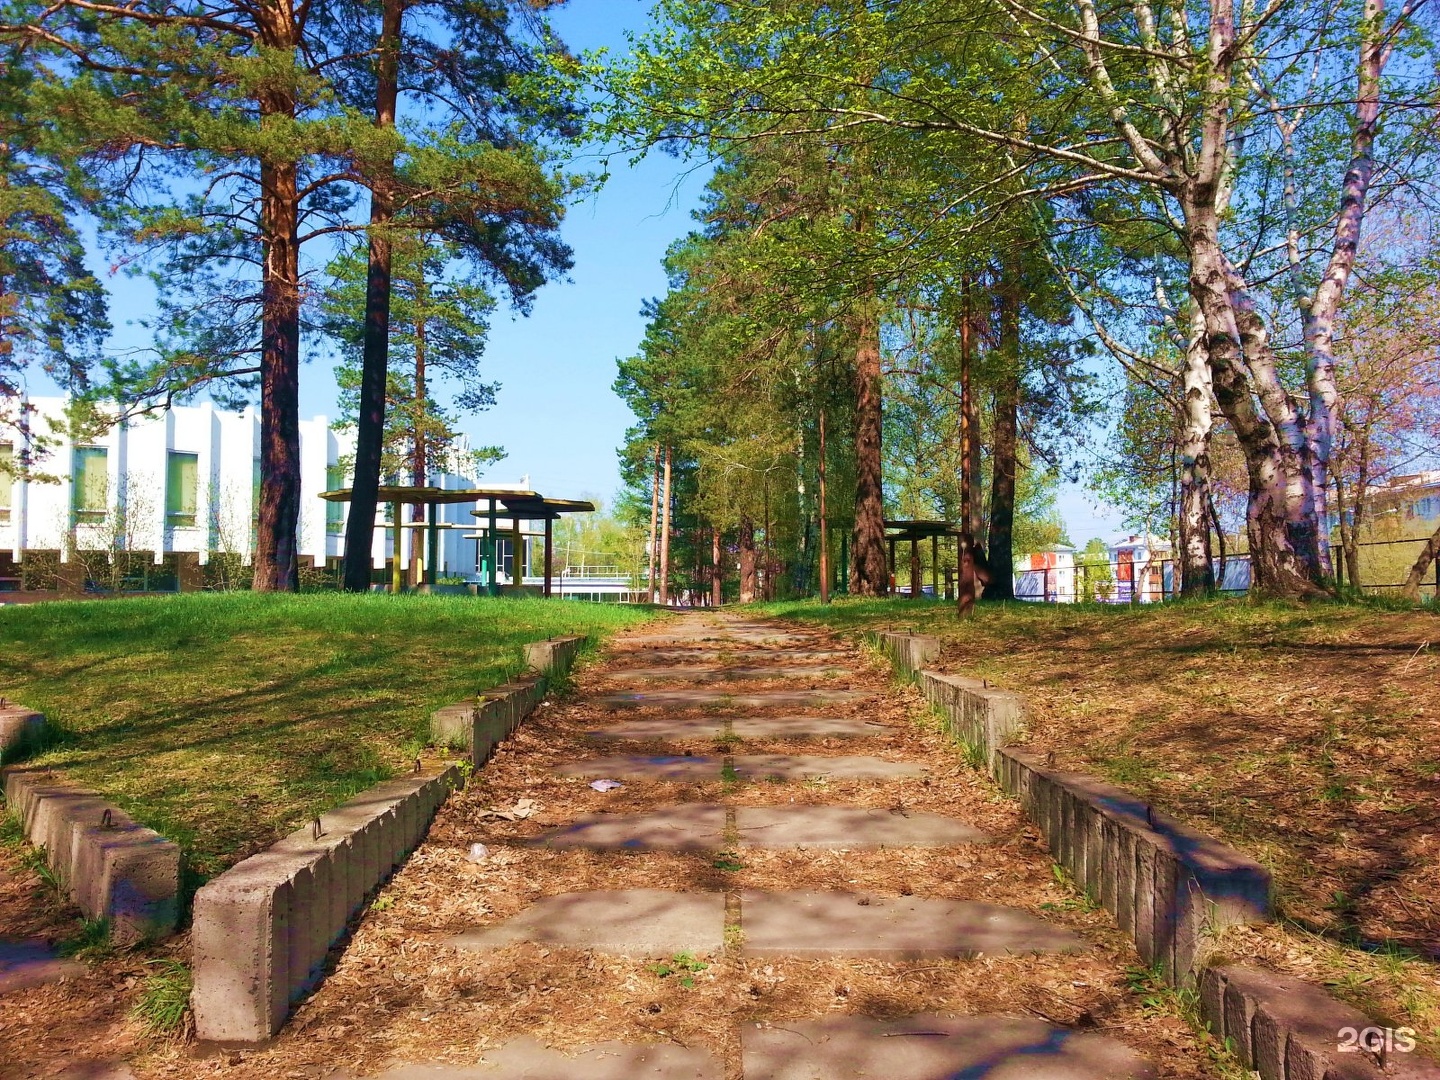 Иркутск парк отдыха